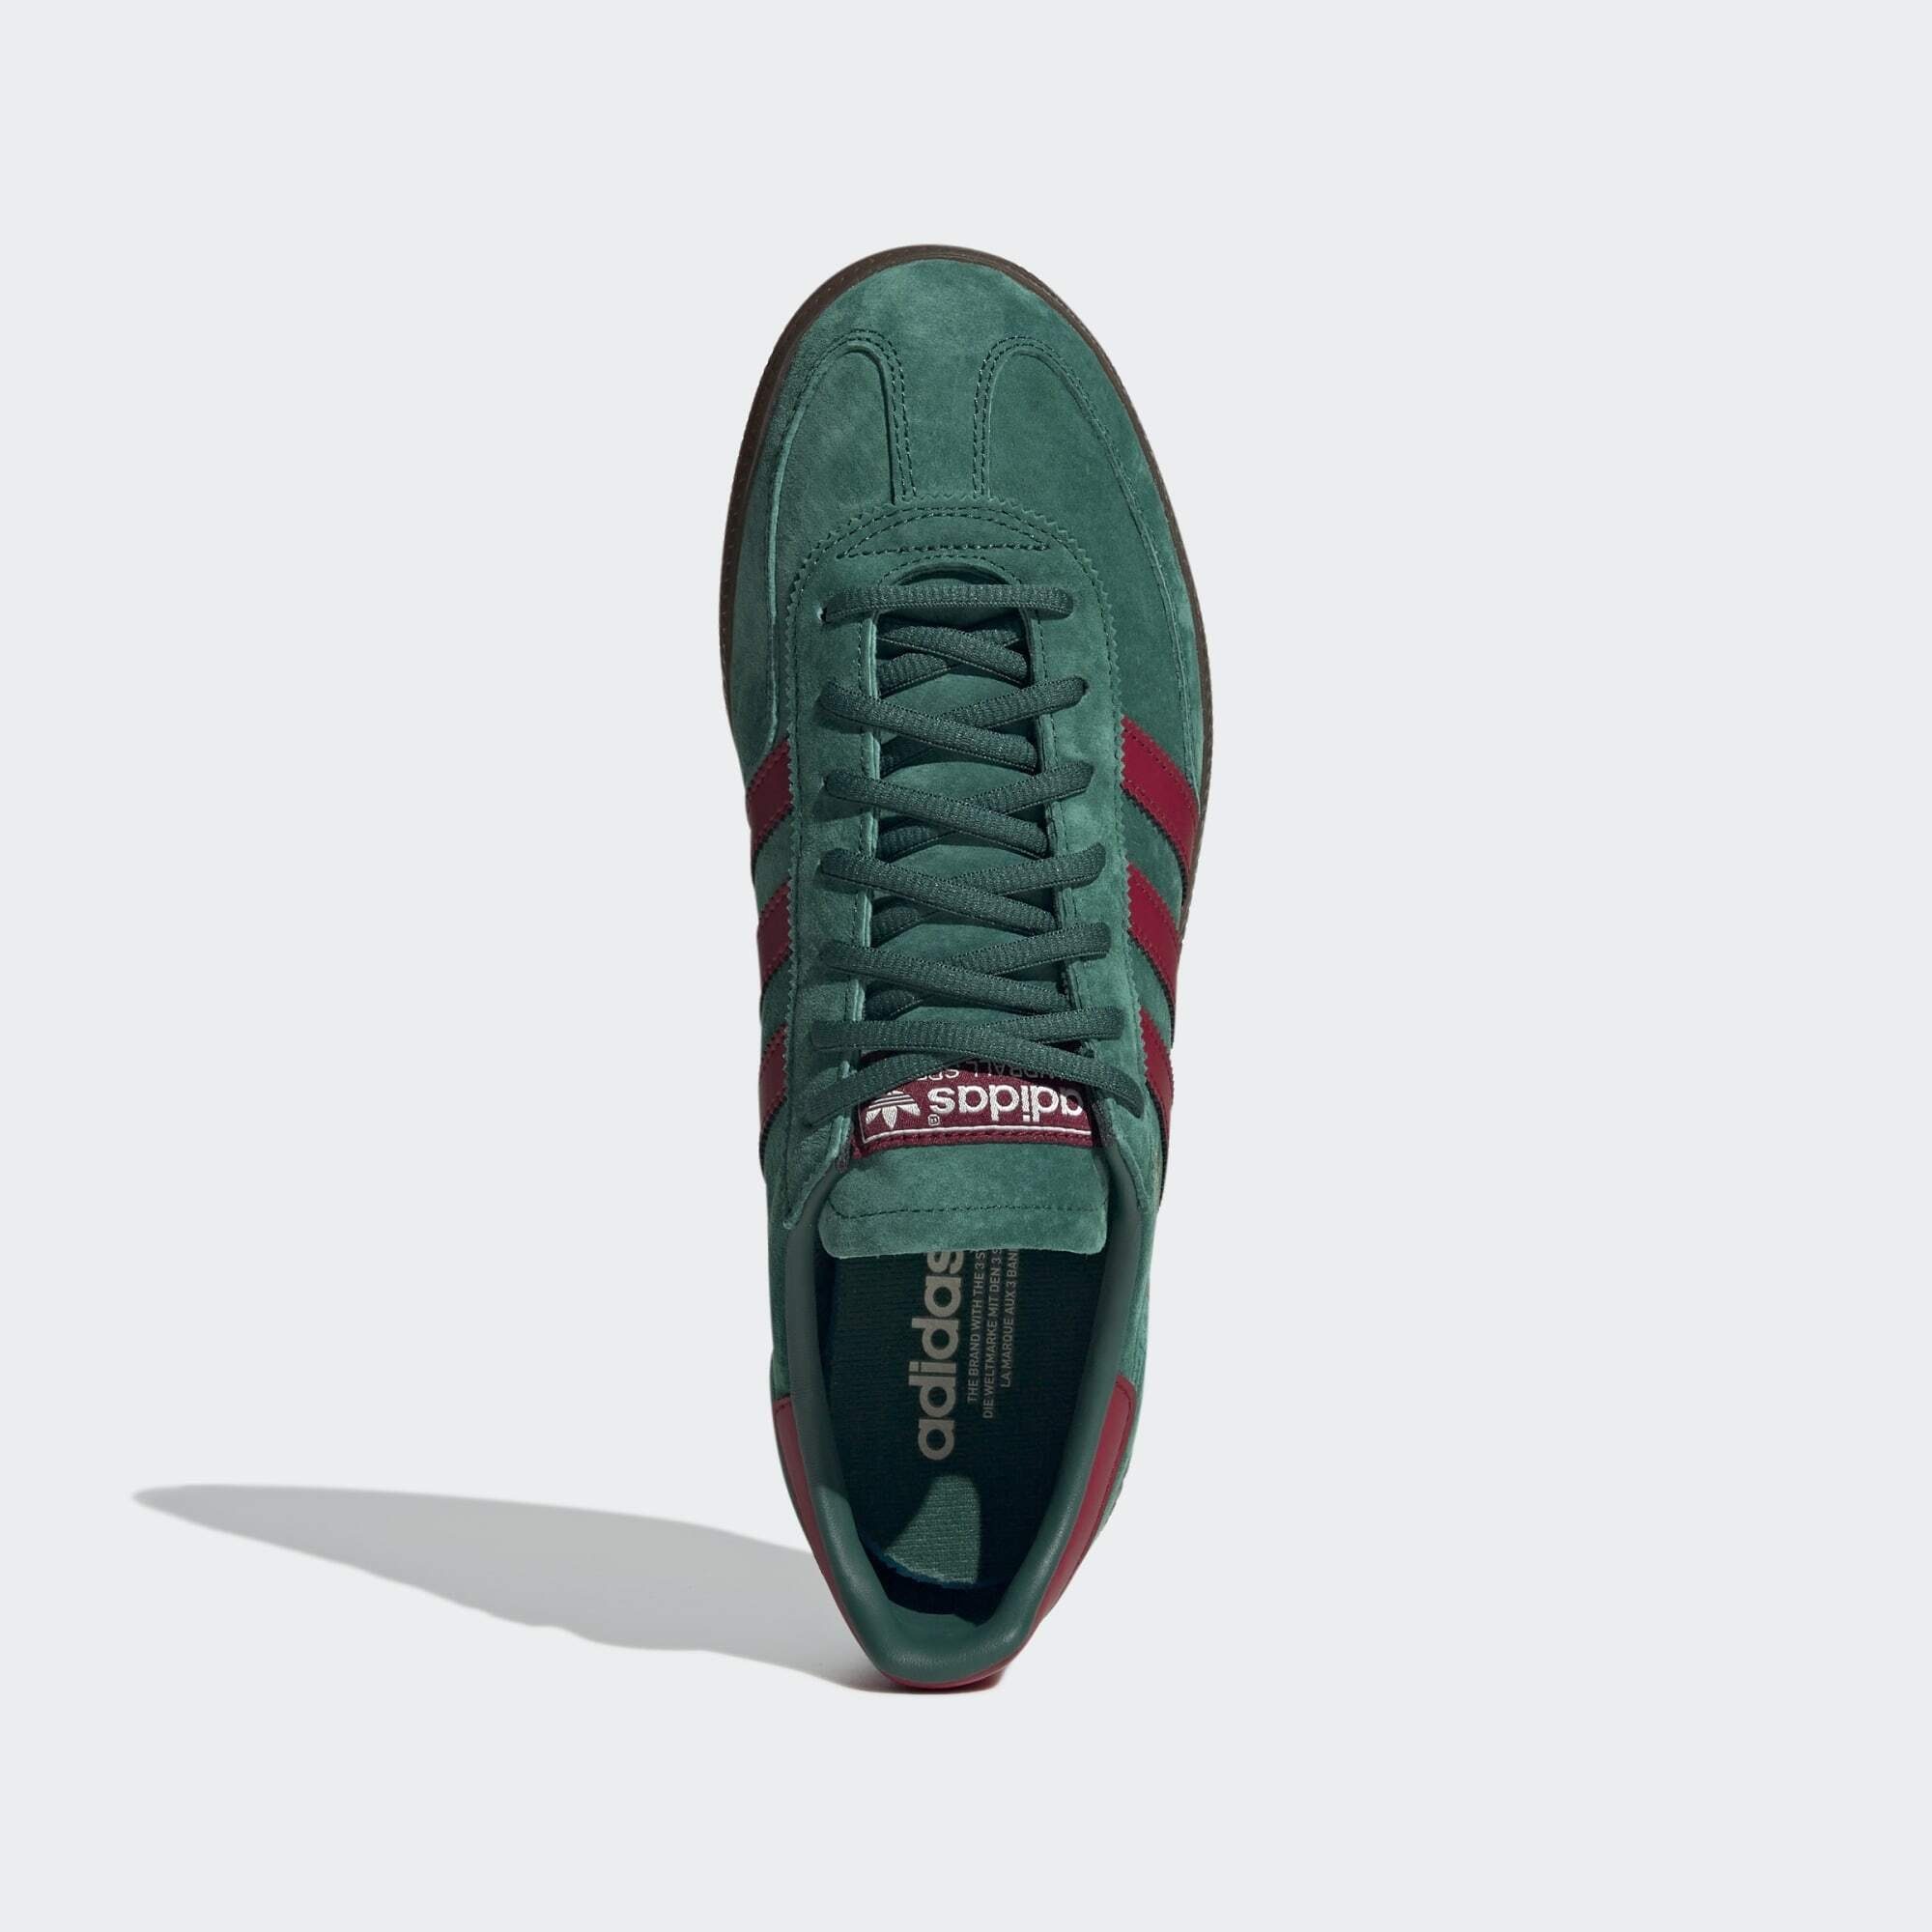 Gum adidas Burgundy SPEZIAL SCHUH / Collegiate Collegiate Originals / Sneaker Green HANDBALL